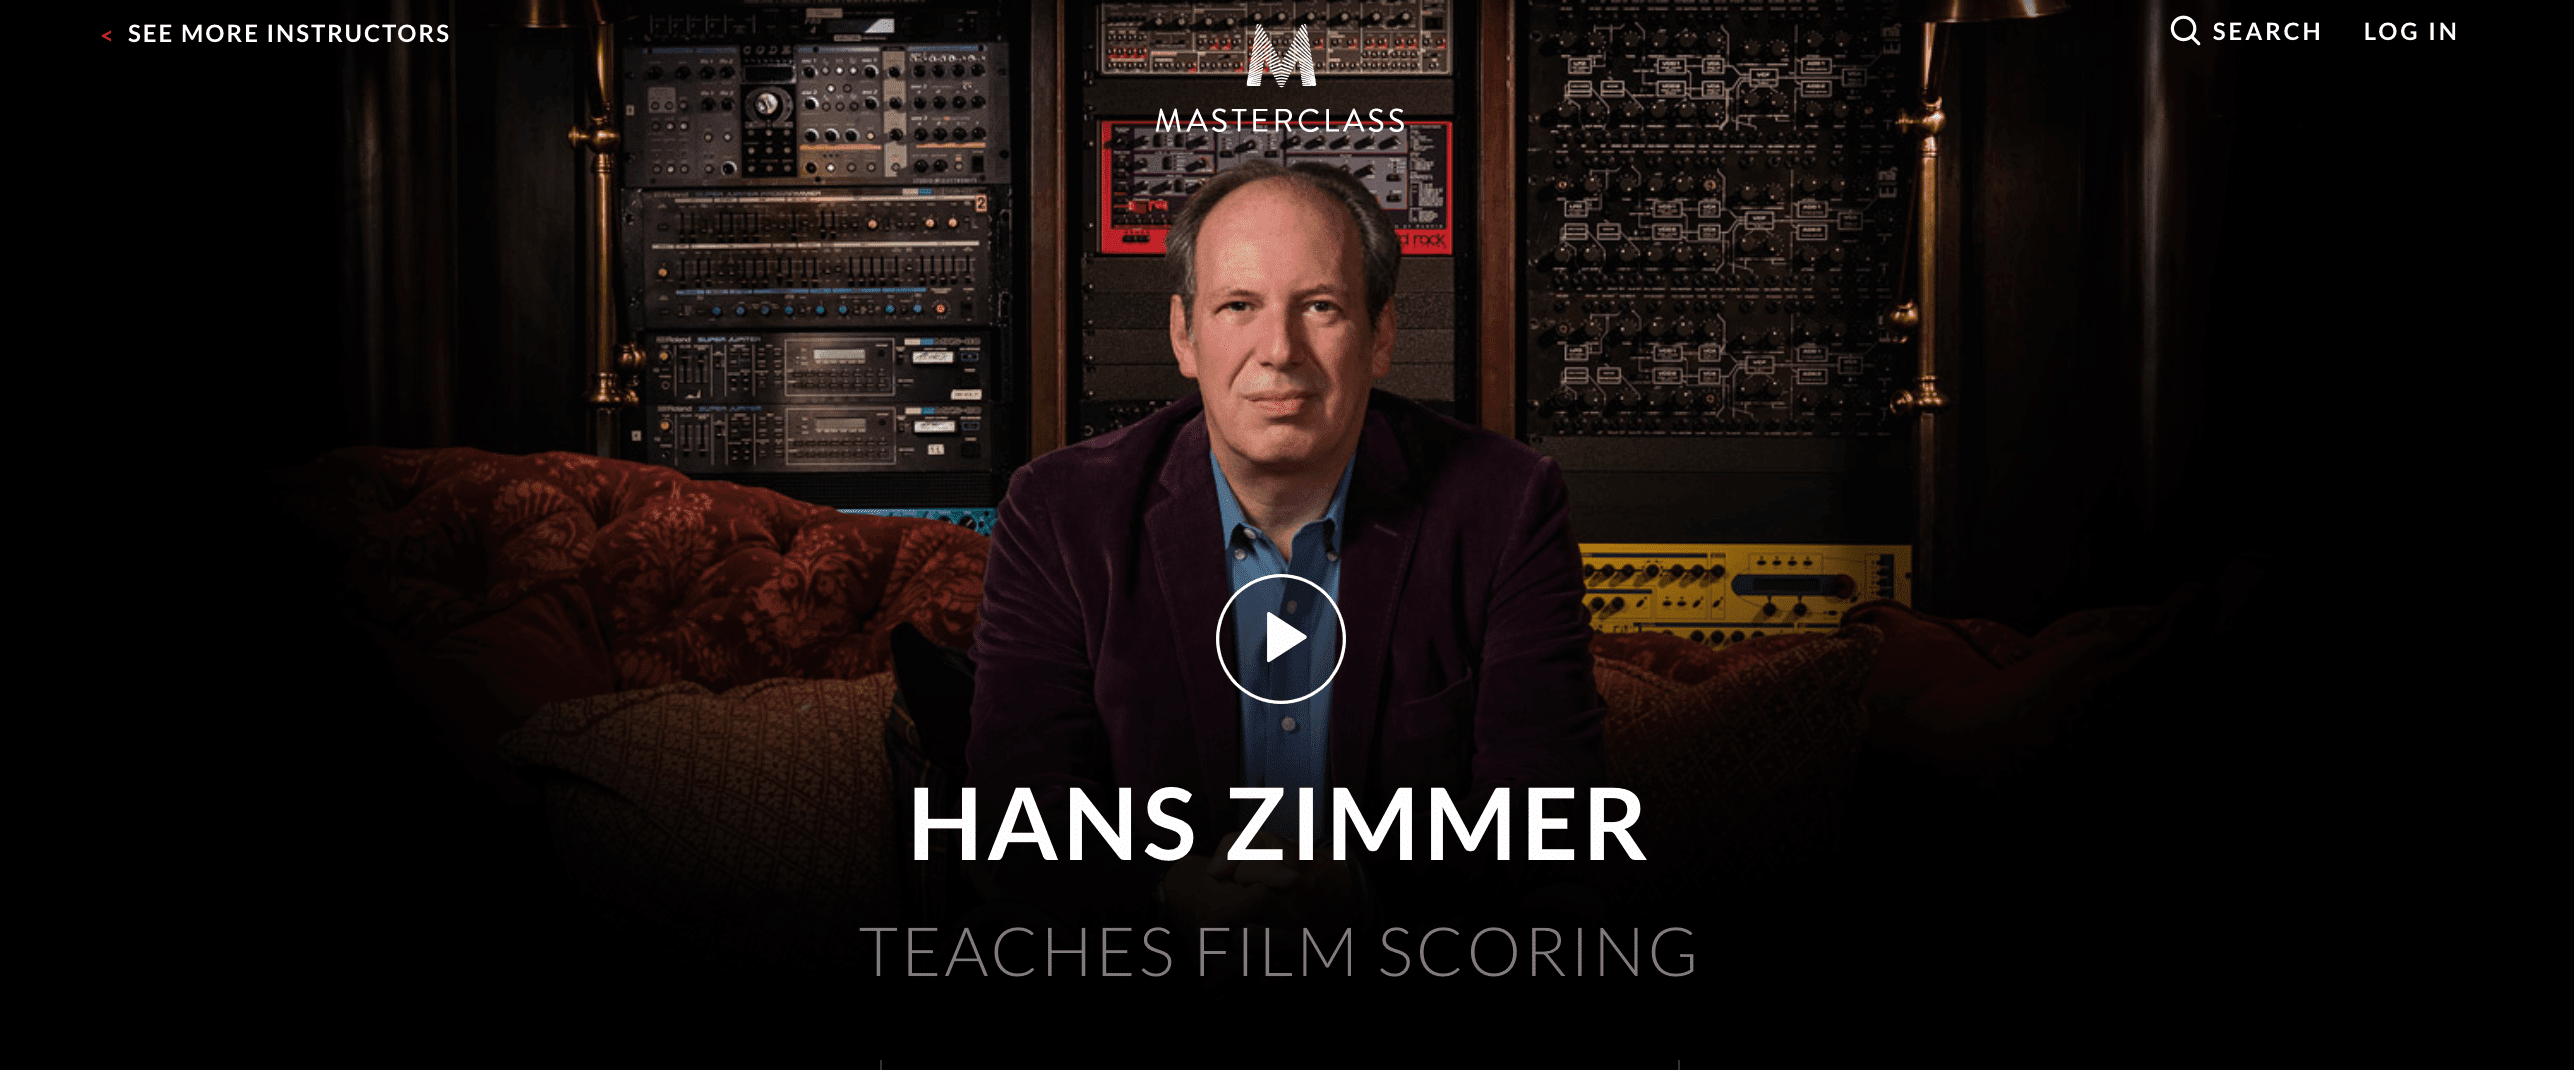 Hans Zimmer MasterClass Review